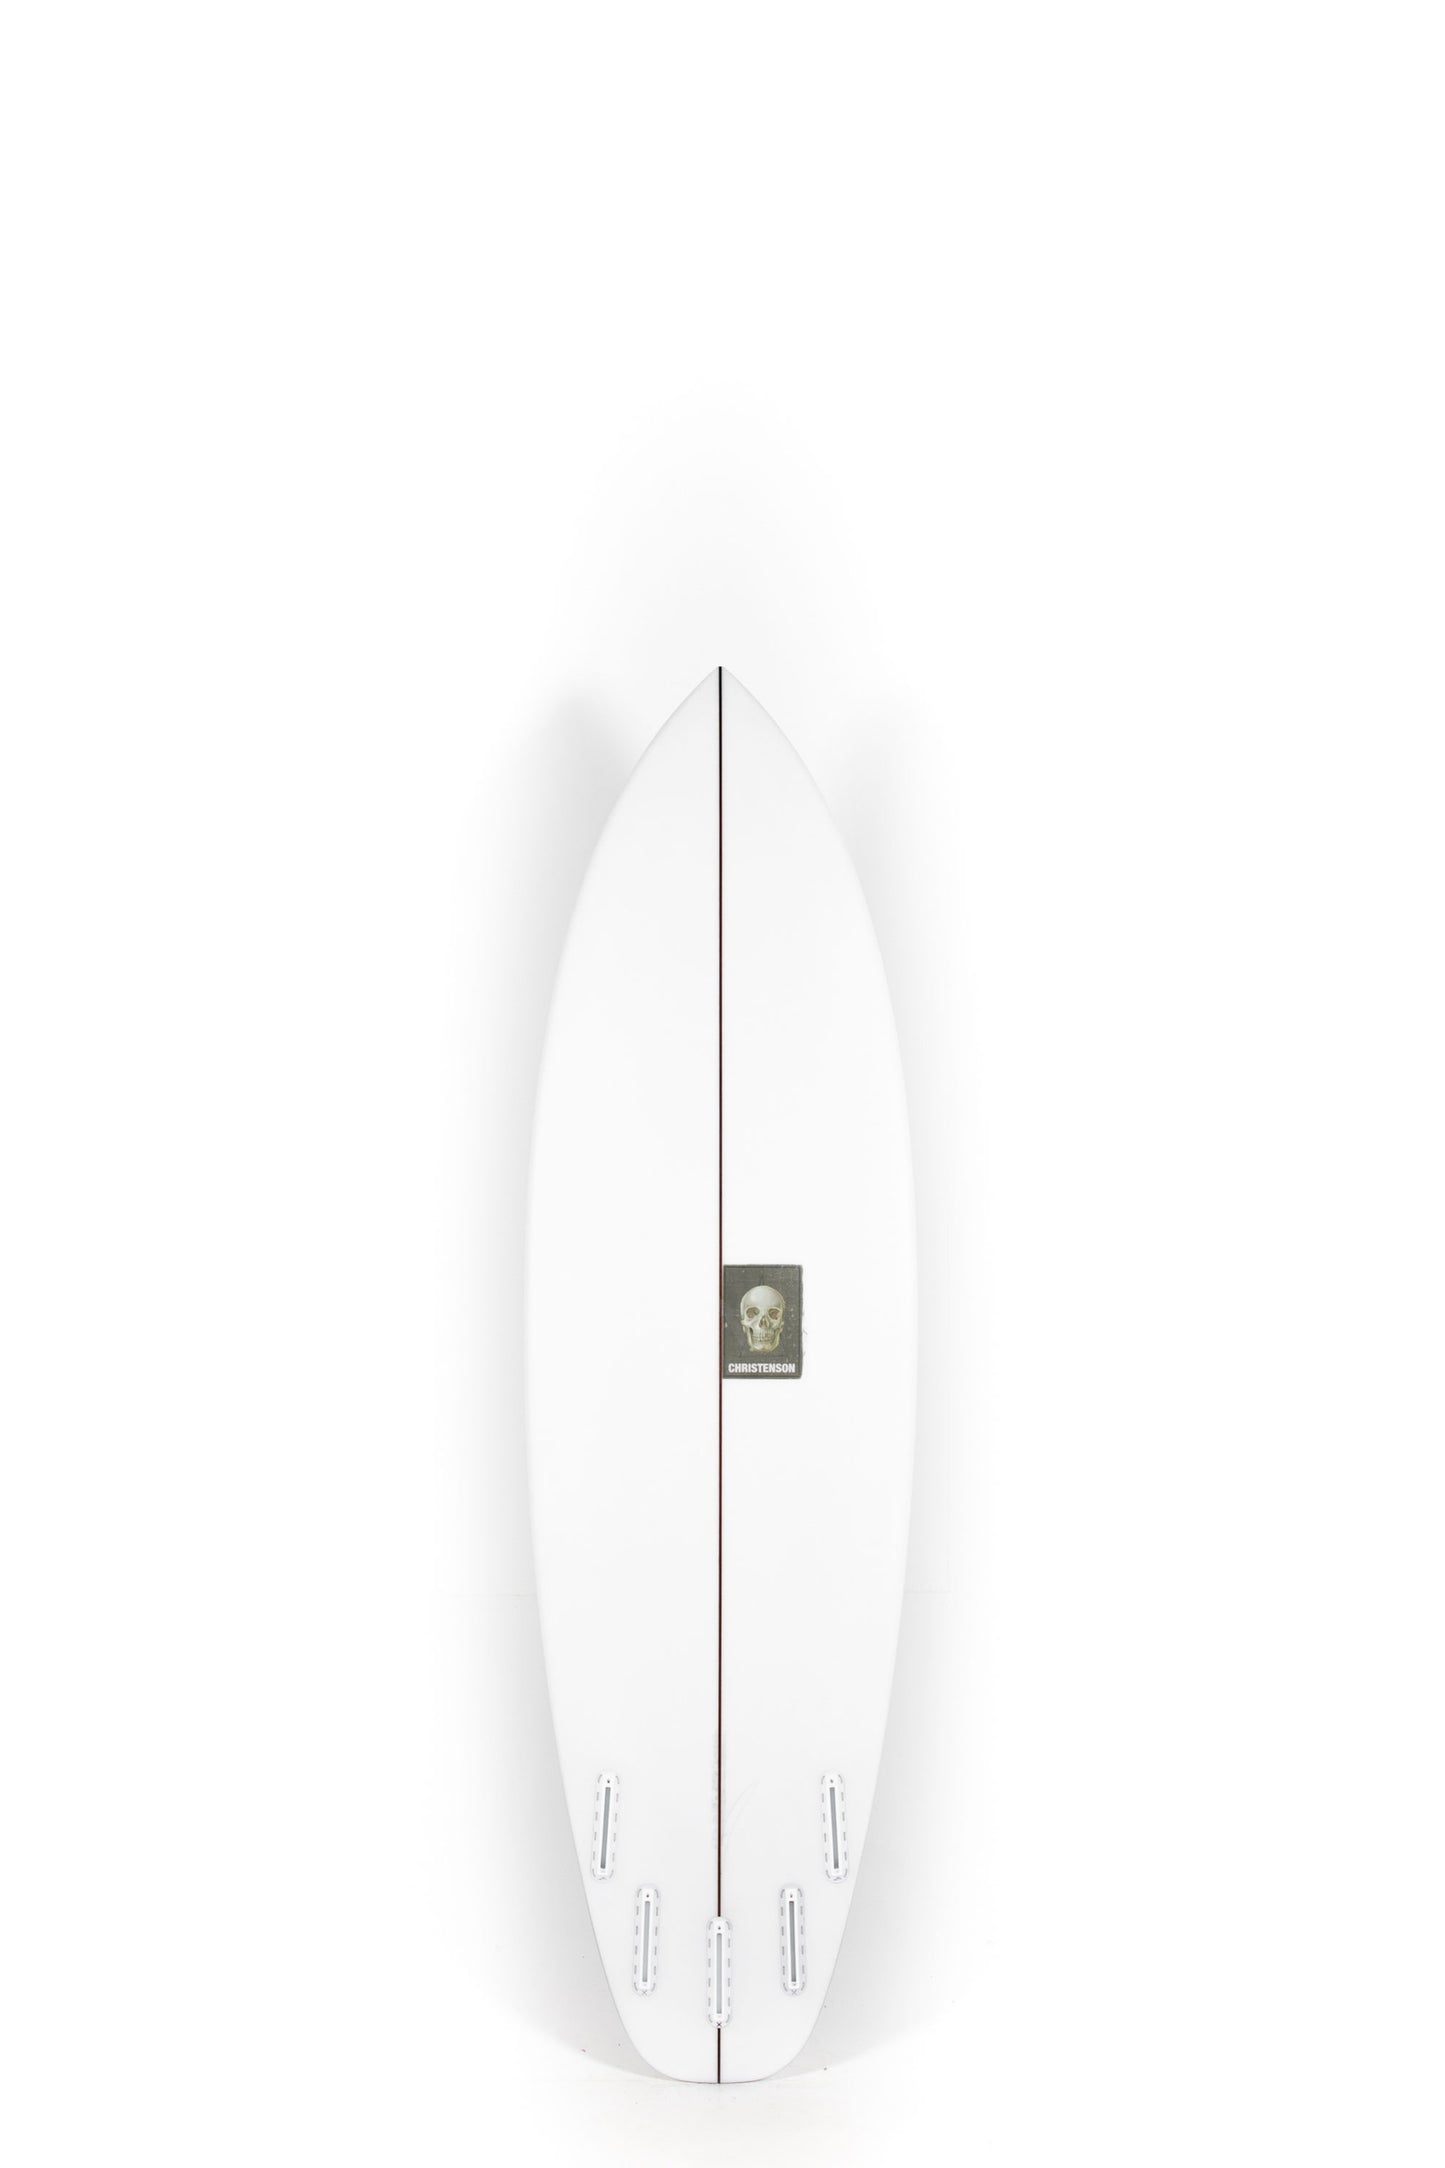 Pukas Surf Shop - Christenson Surfboard  - SURFER ROSA - 6'2” x 20 1/4 x 2 9/16 - CX05002